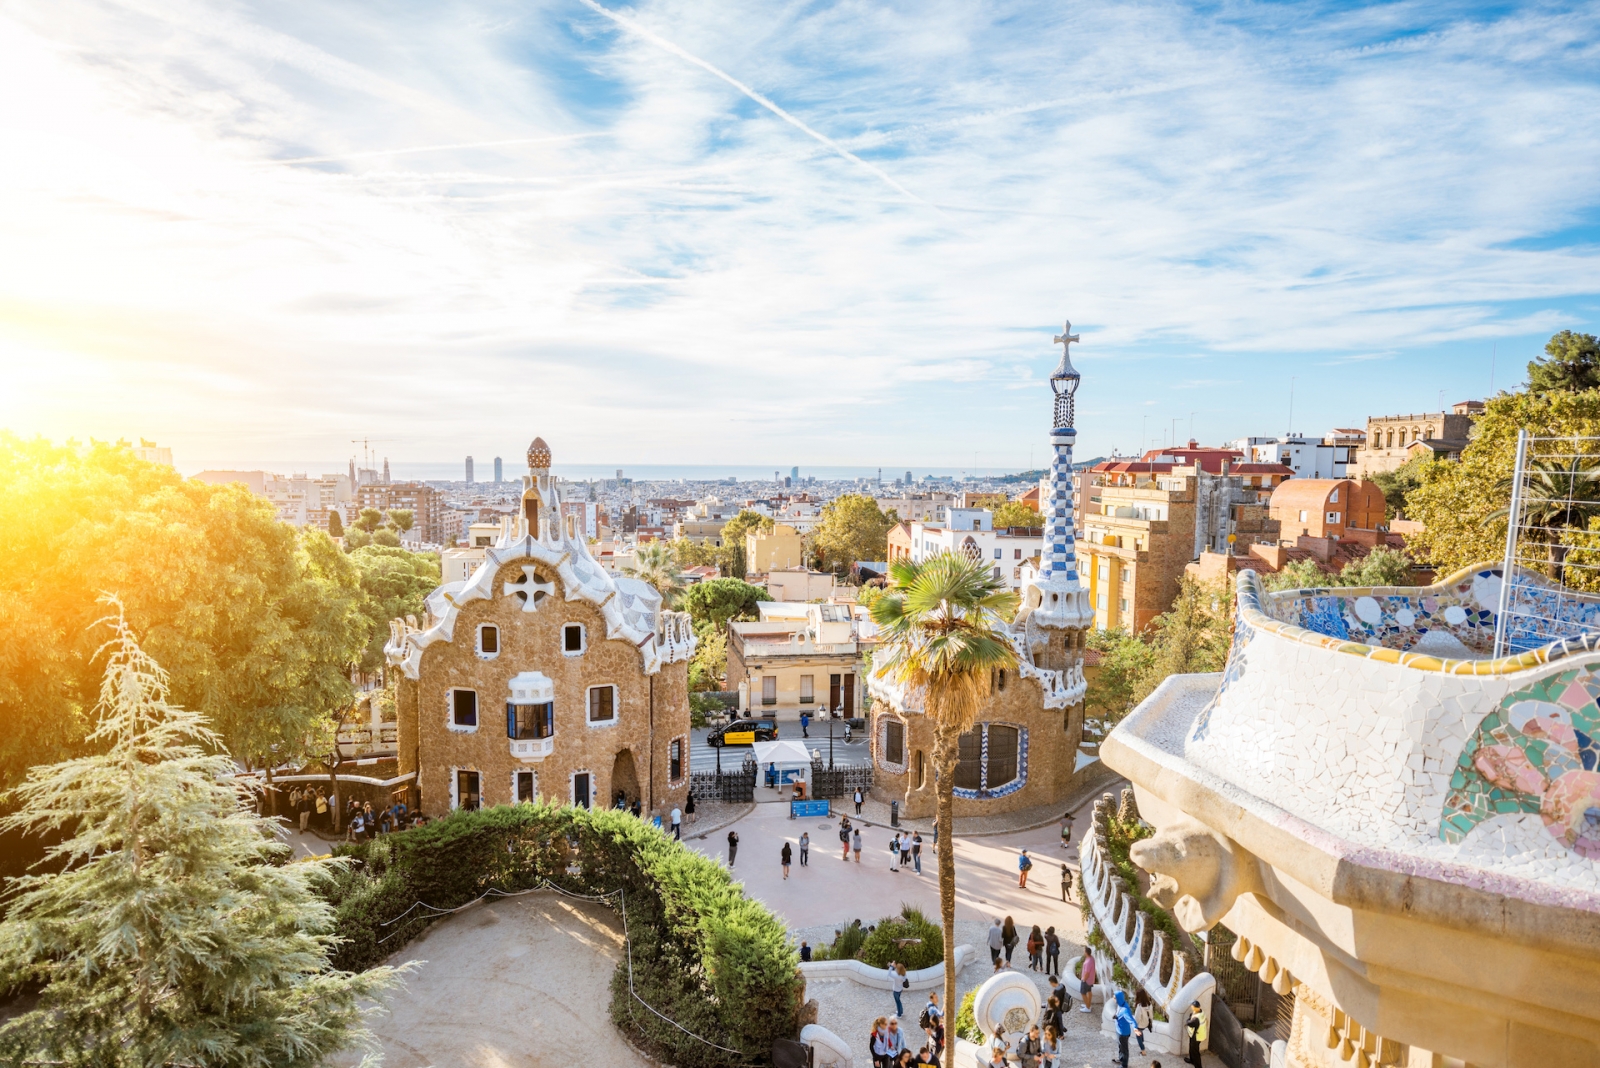 Vue sur le paysage urbain avec des bâtiments féeriques colorés dans le célèbre parc Guell pendant la lumière du matin à Barcelone